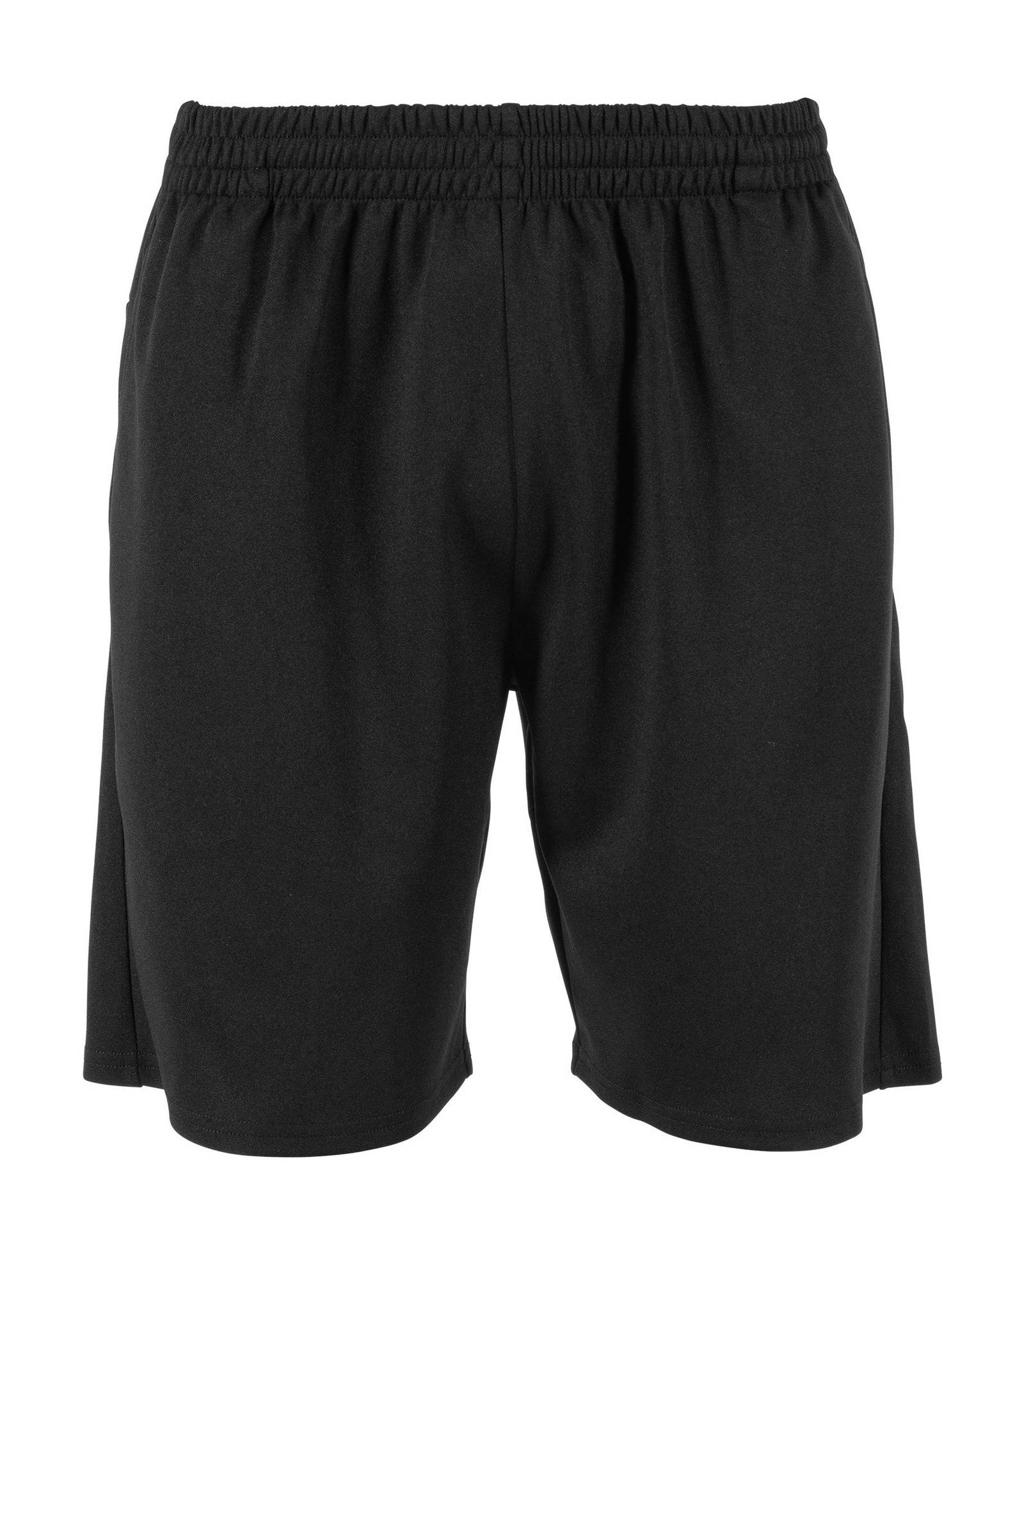 Zwarte heren Stanno sportshort van polyester met regular fit, regular waist en elastische tailleband met koord